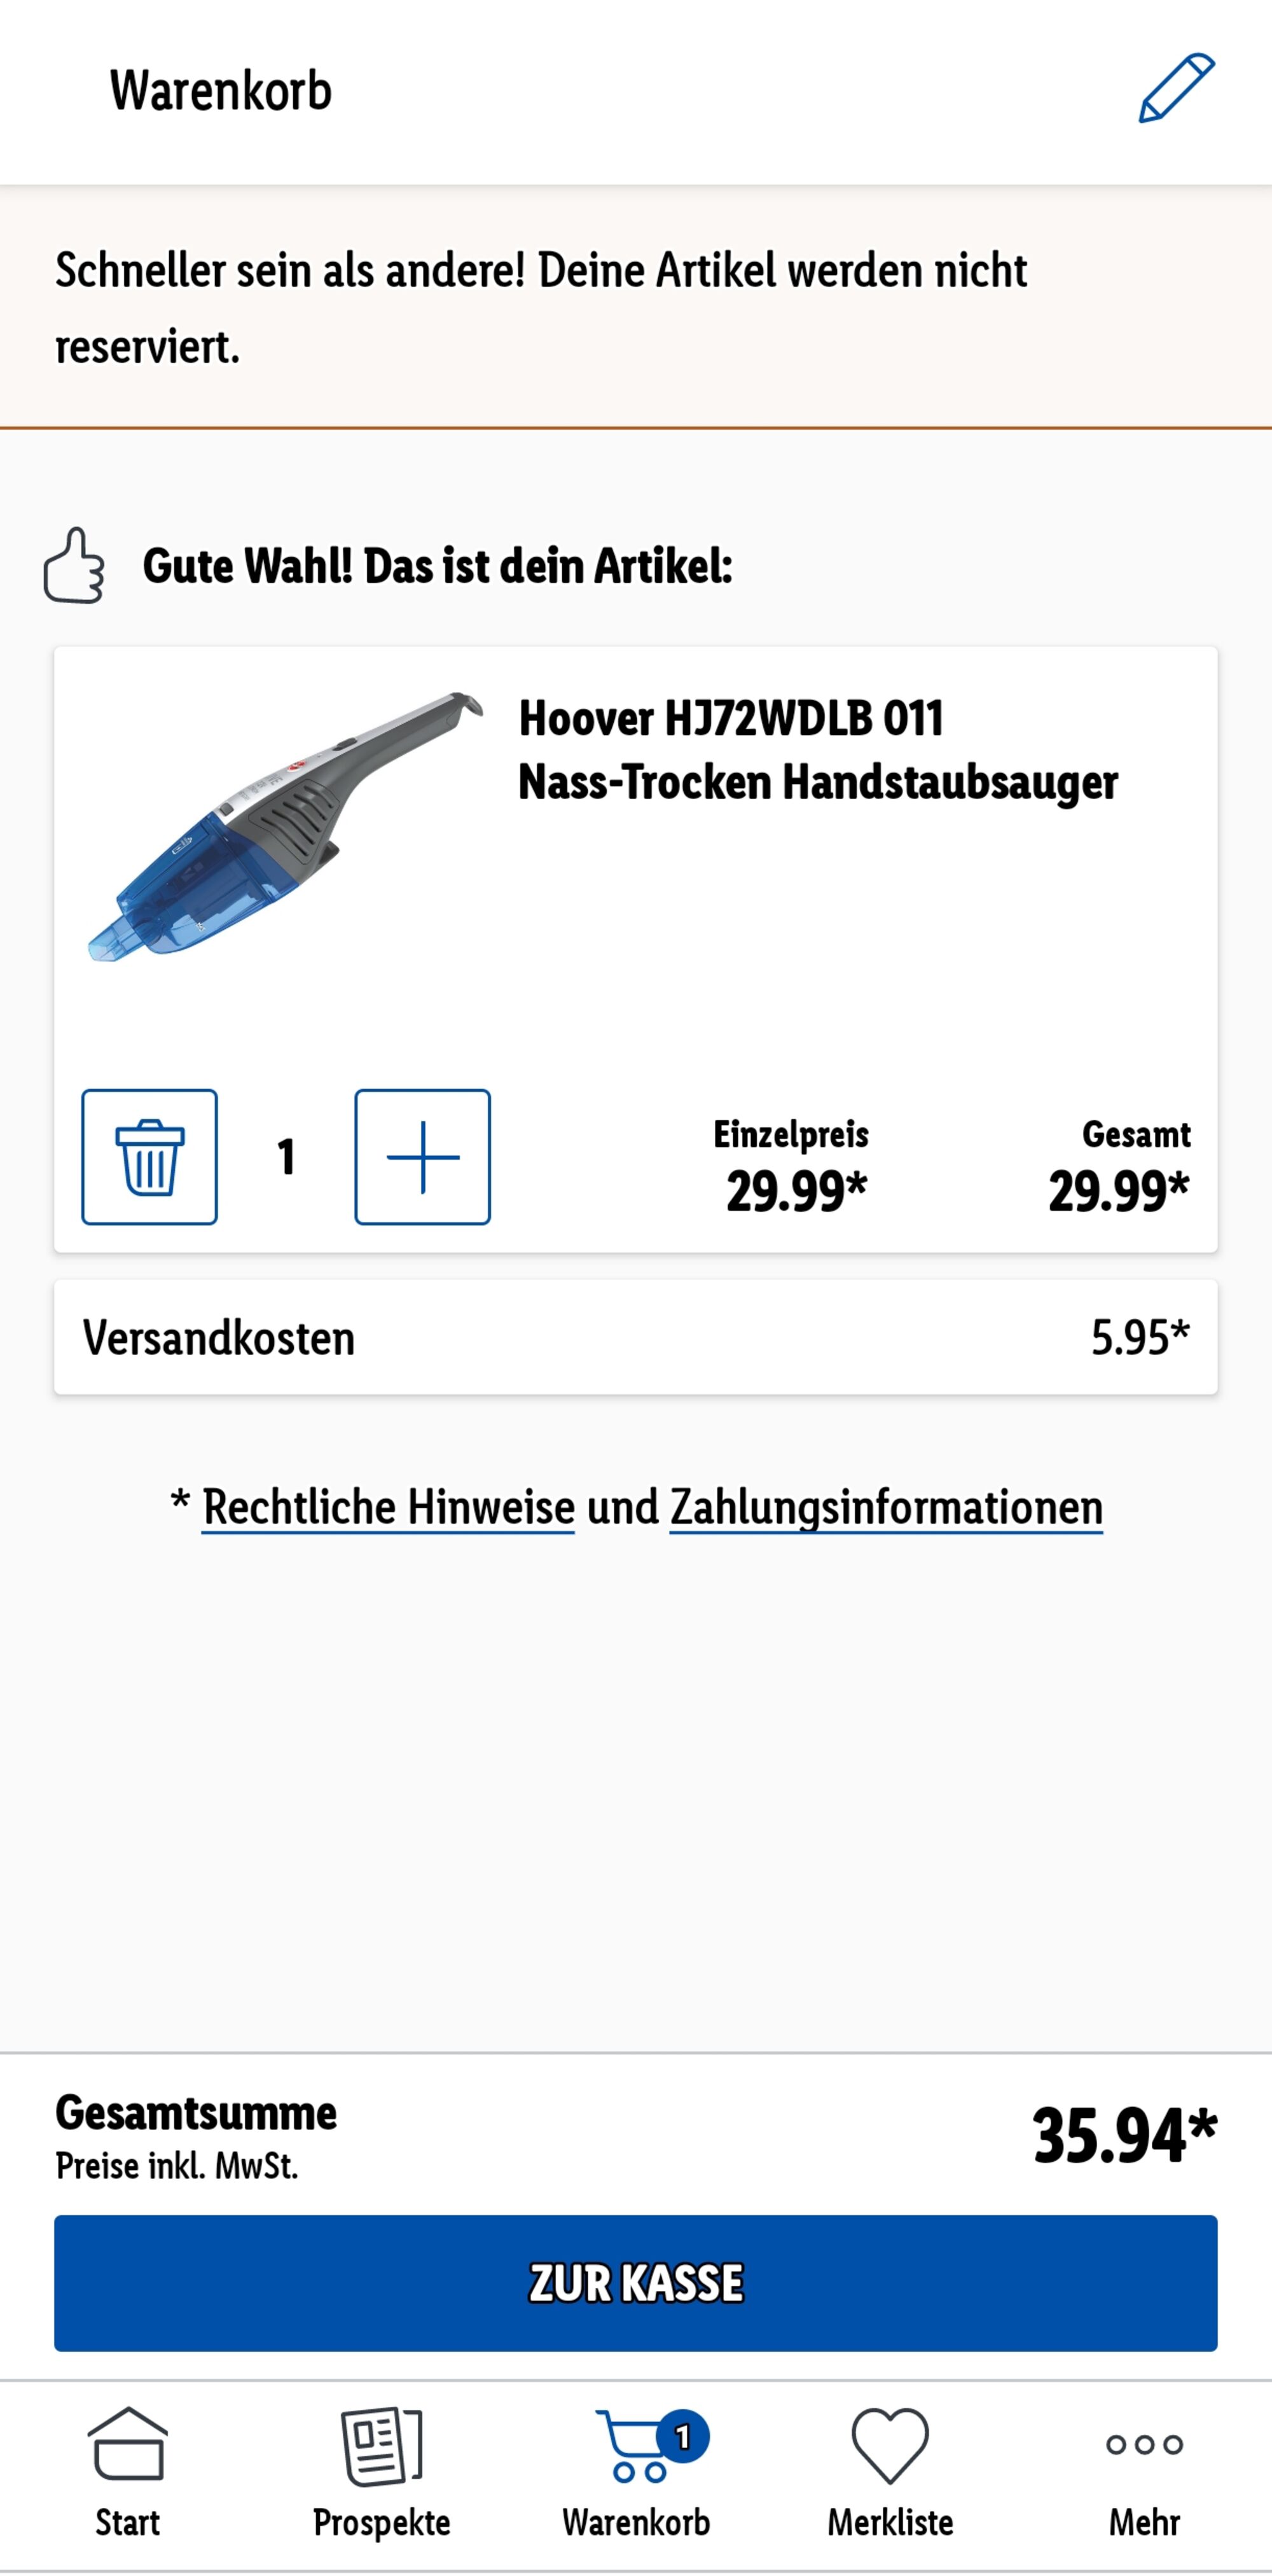 Hoover HJ72WDLB 011 (statt Nass-Trocken 58€) Handstaubsauger 35,94€ für